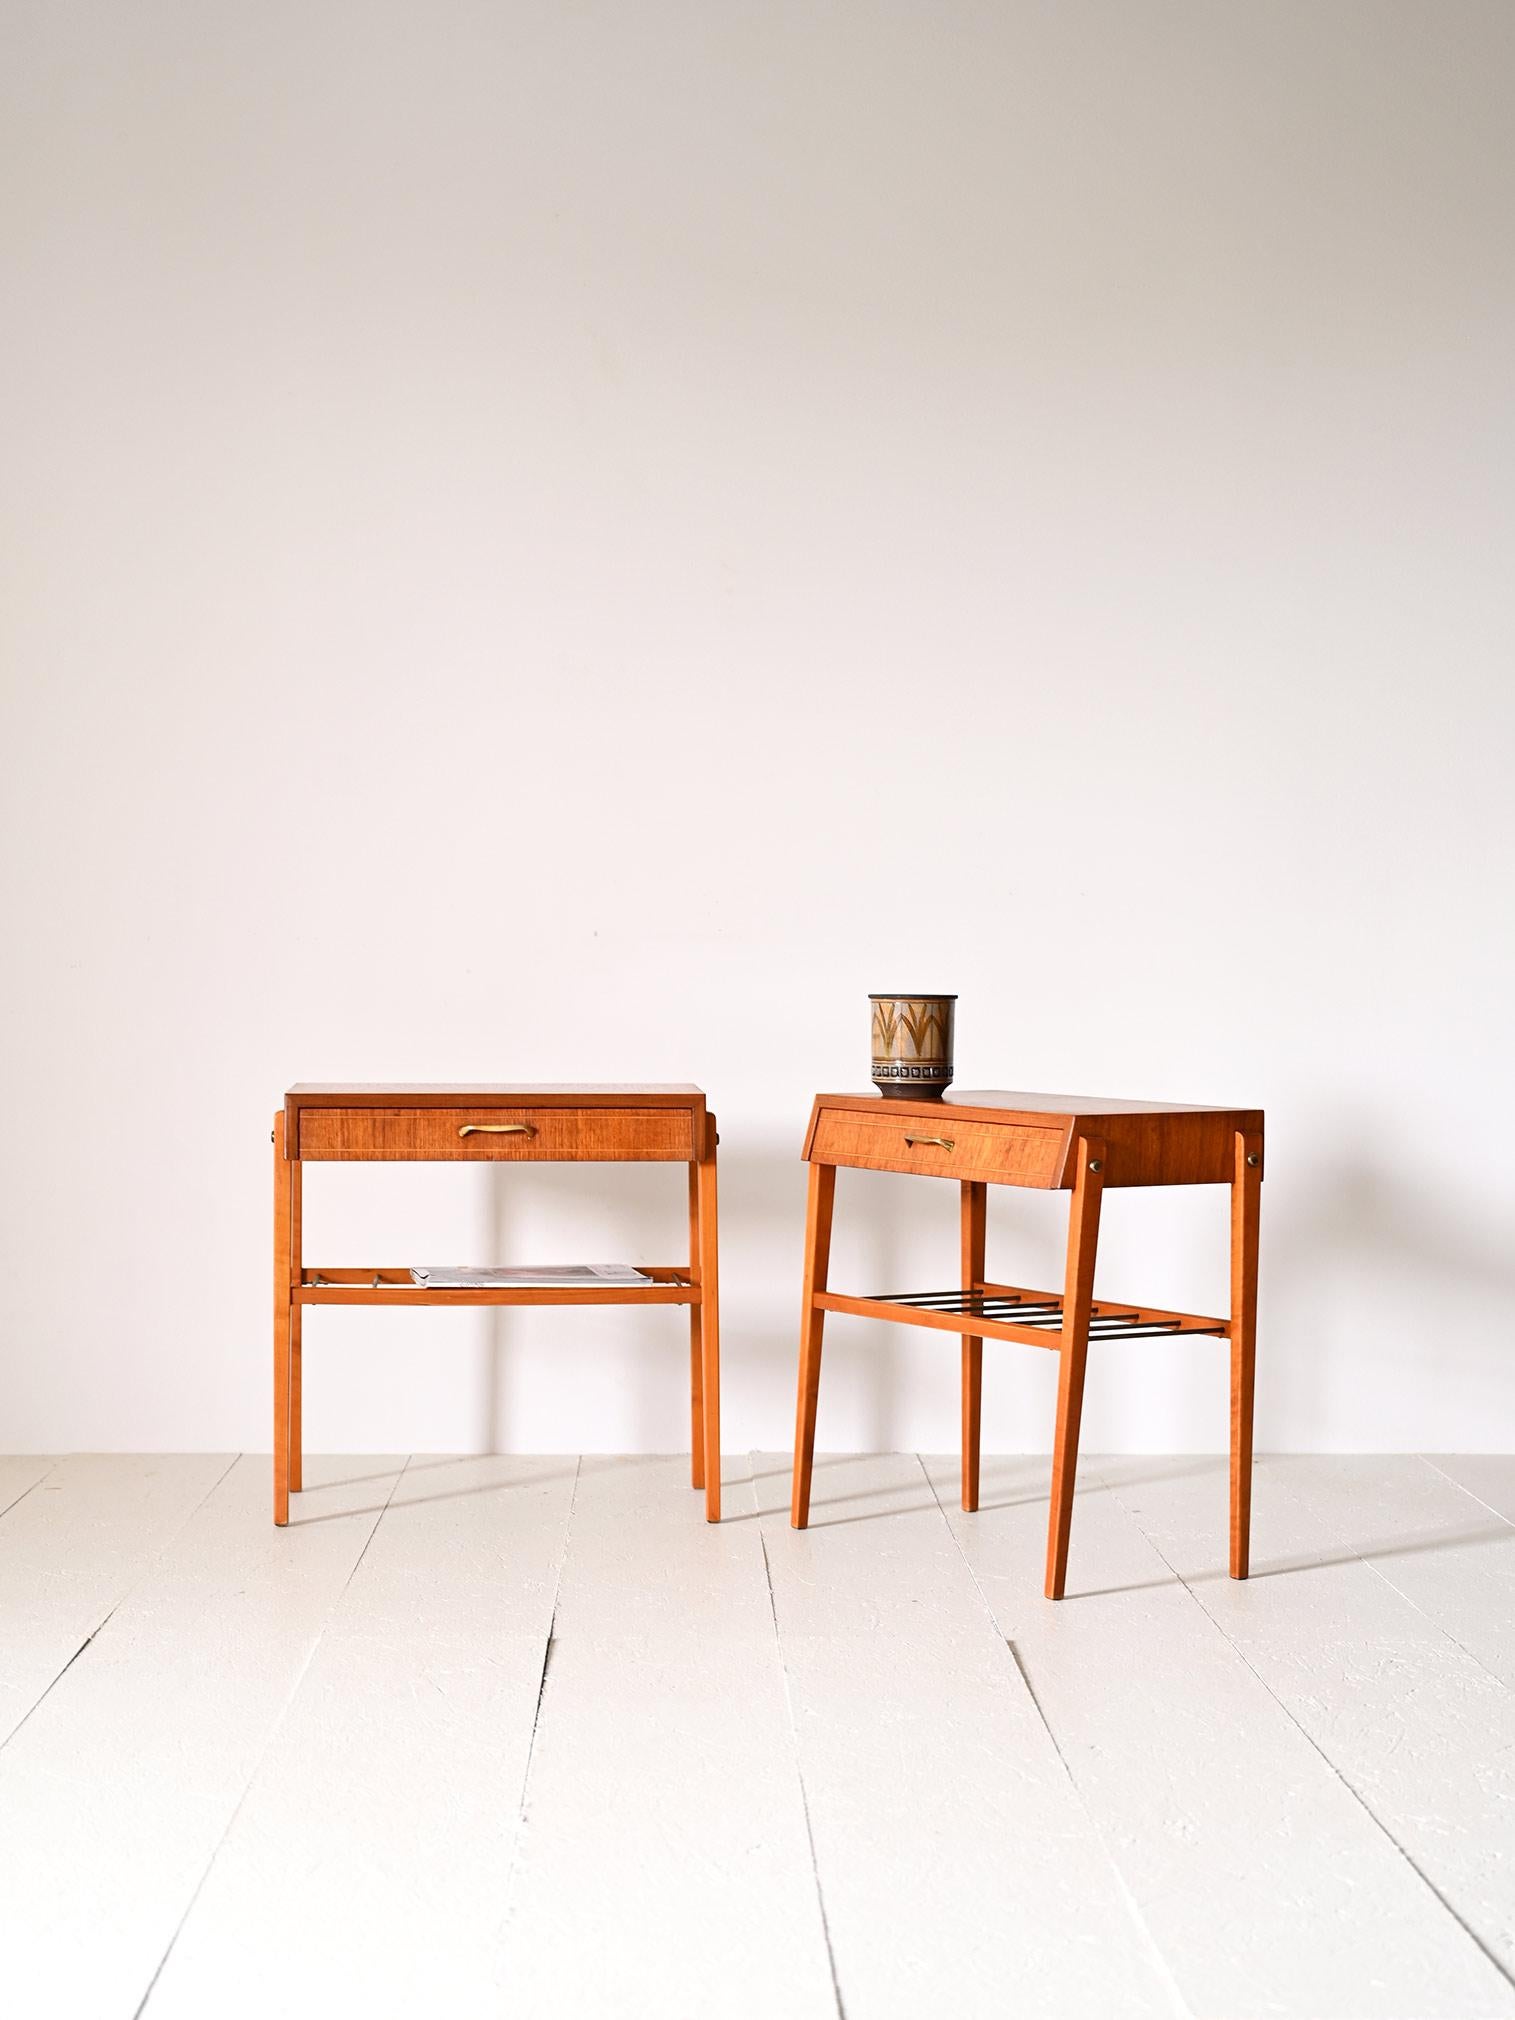 Zwei originelle skandinavische Nachttische im Vintage-Stil aus Holz und Metall.

Diese Möbel zeichnen sich durch ihre eleganten Linien und raffinierten Details aus. Sie verfügen über eine praktische Schublade mit einem goldenen Metallgriff und eine